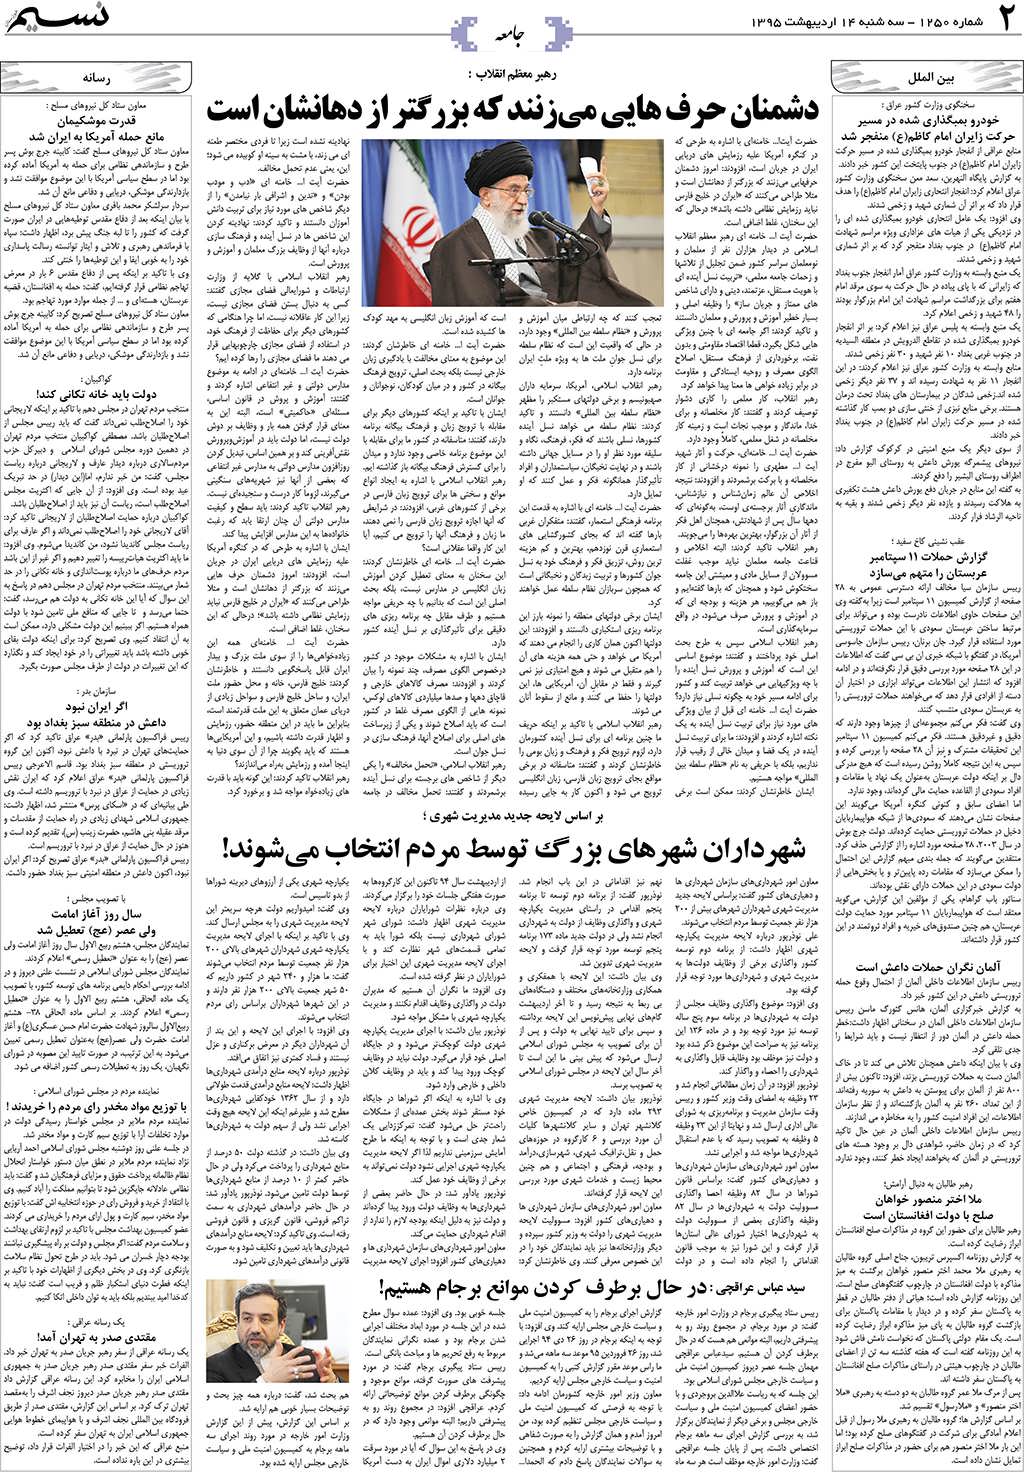 صفحه جامعه روزنامه نسیم شماره 1250